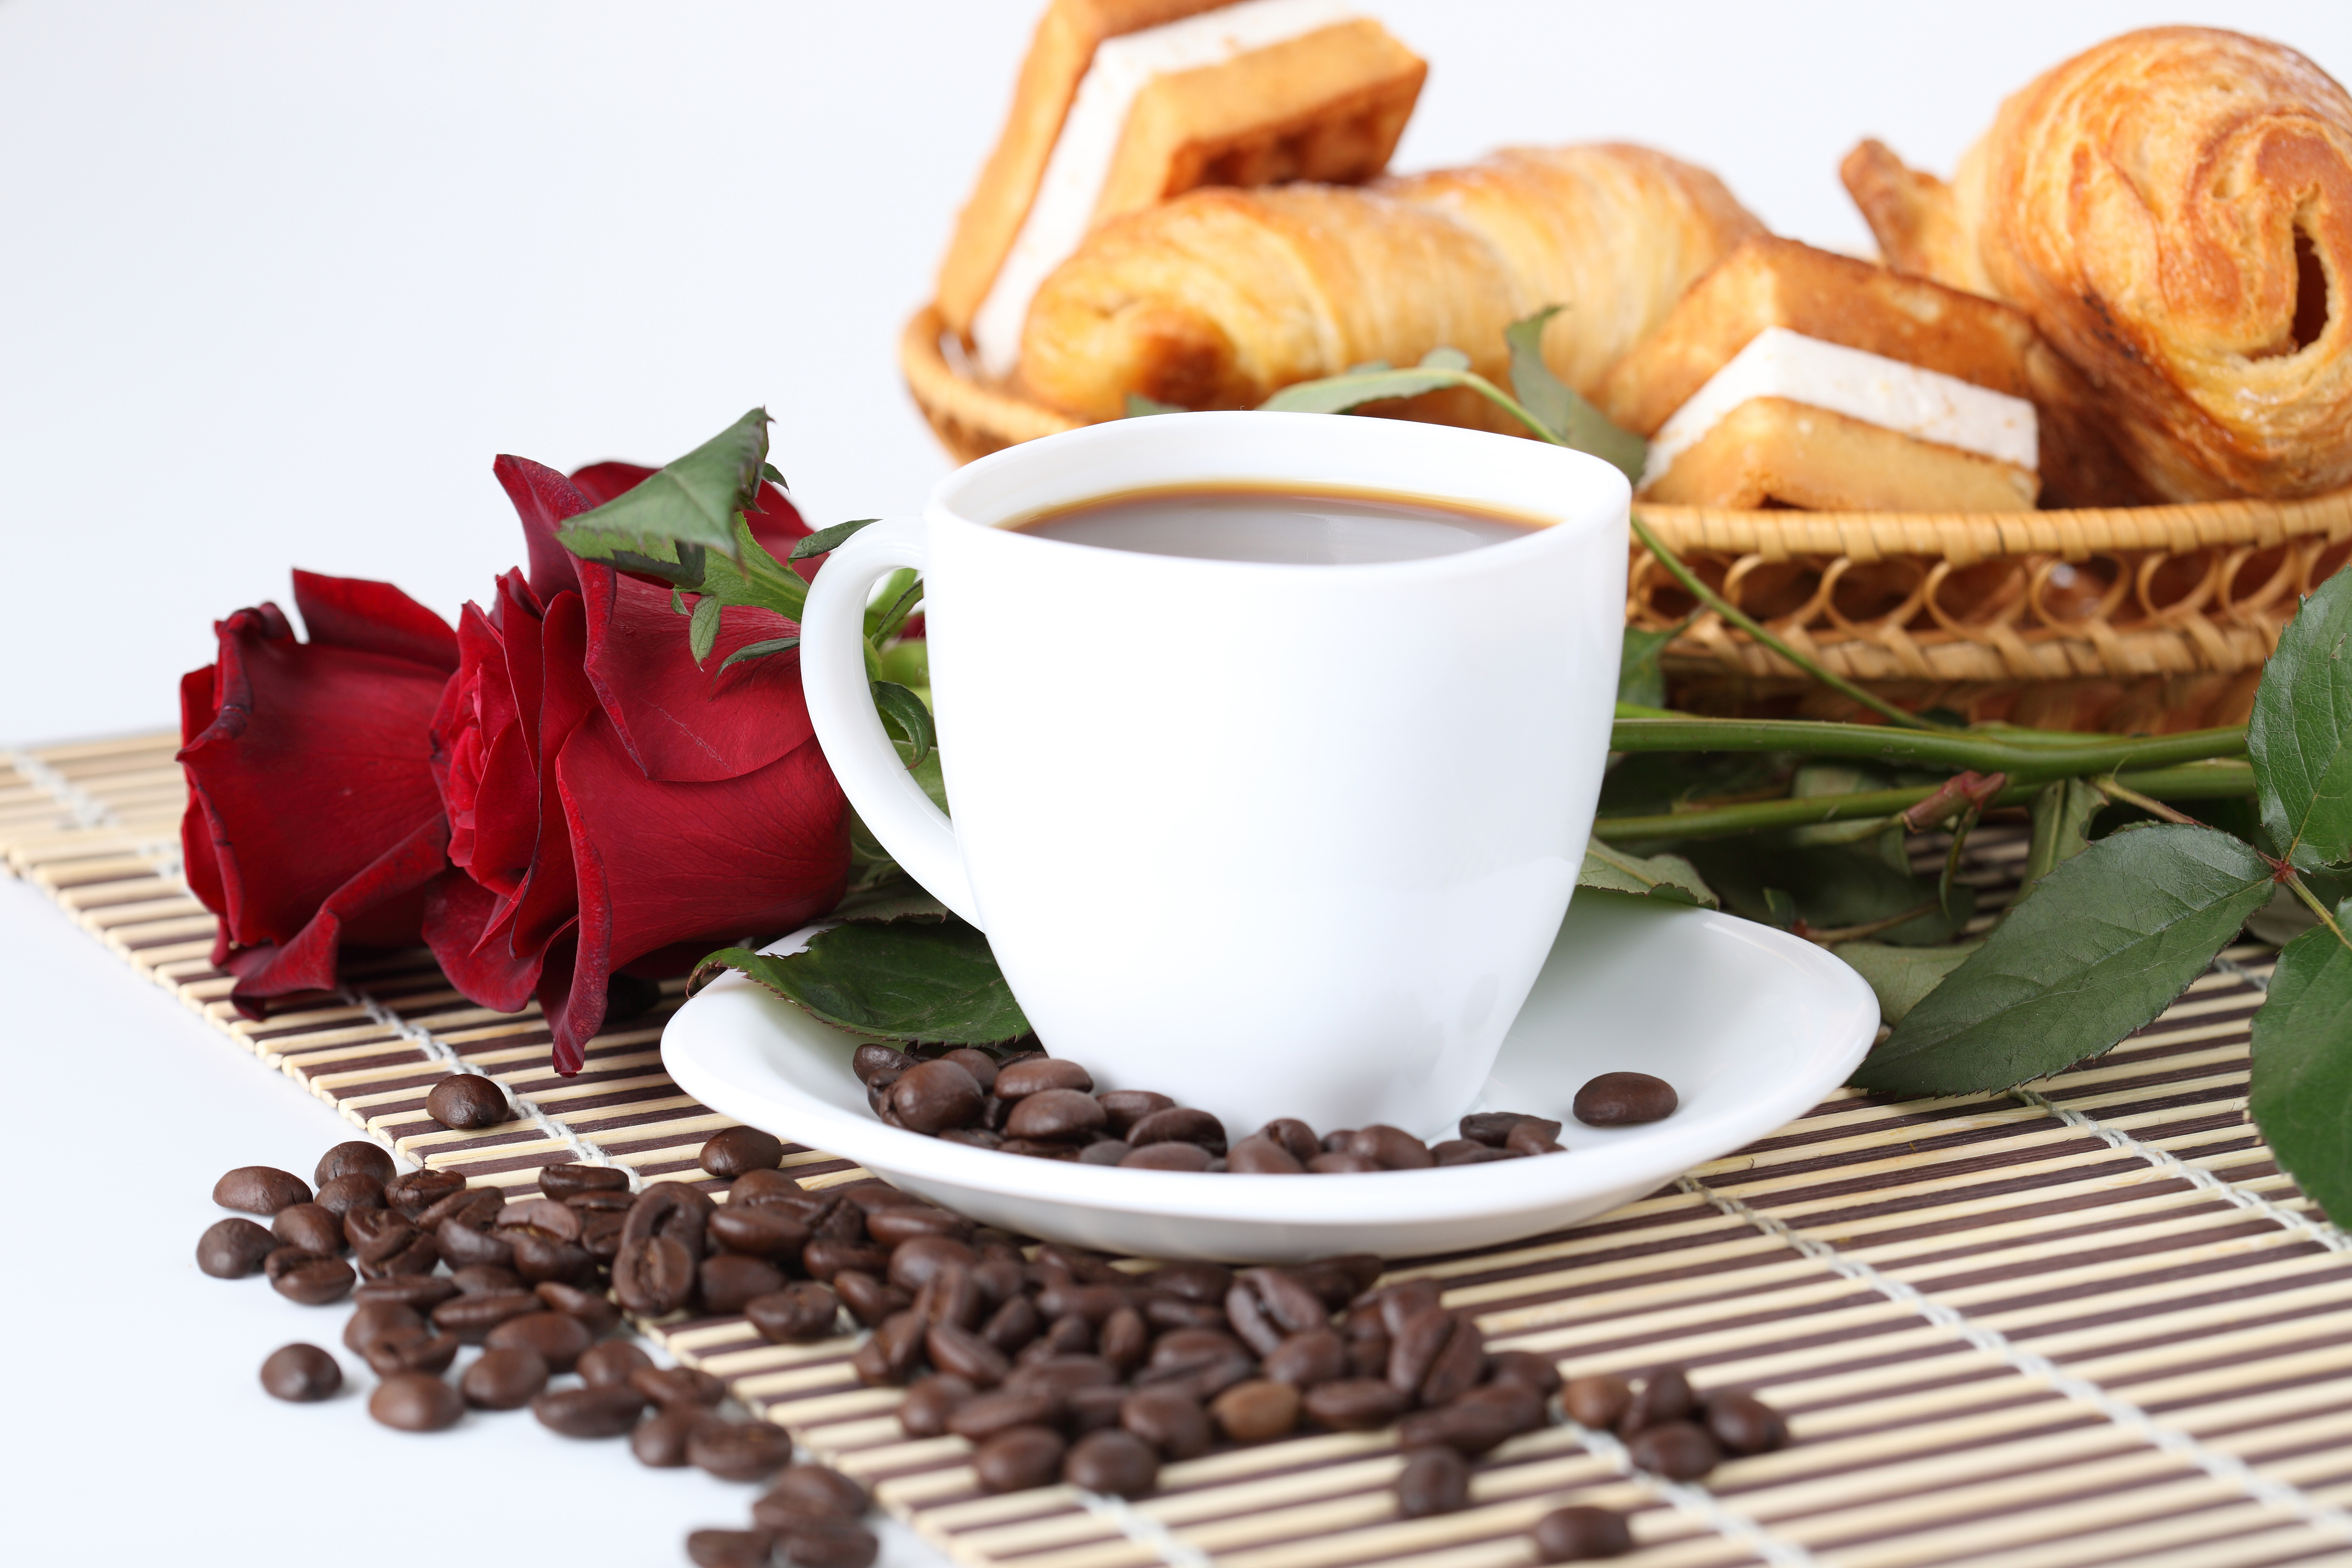 https://s1.1zoom.ru/big3/456/Coffee_Roses_Breakfast_Cup_Grain_514528_8600x5733.jpg